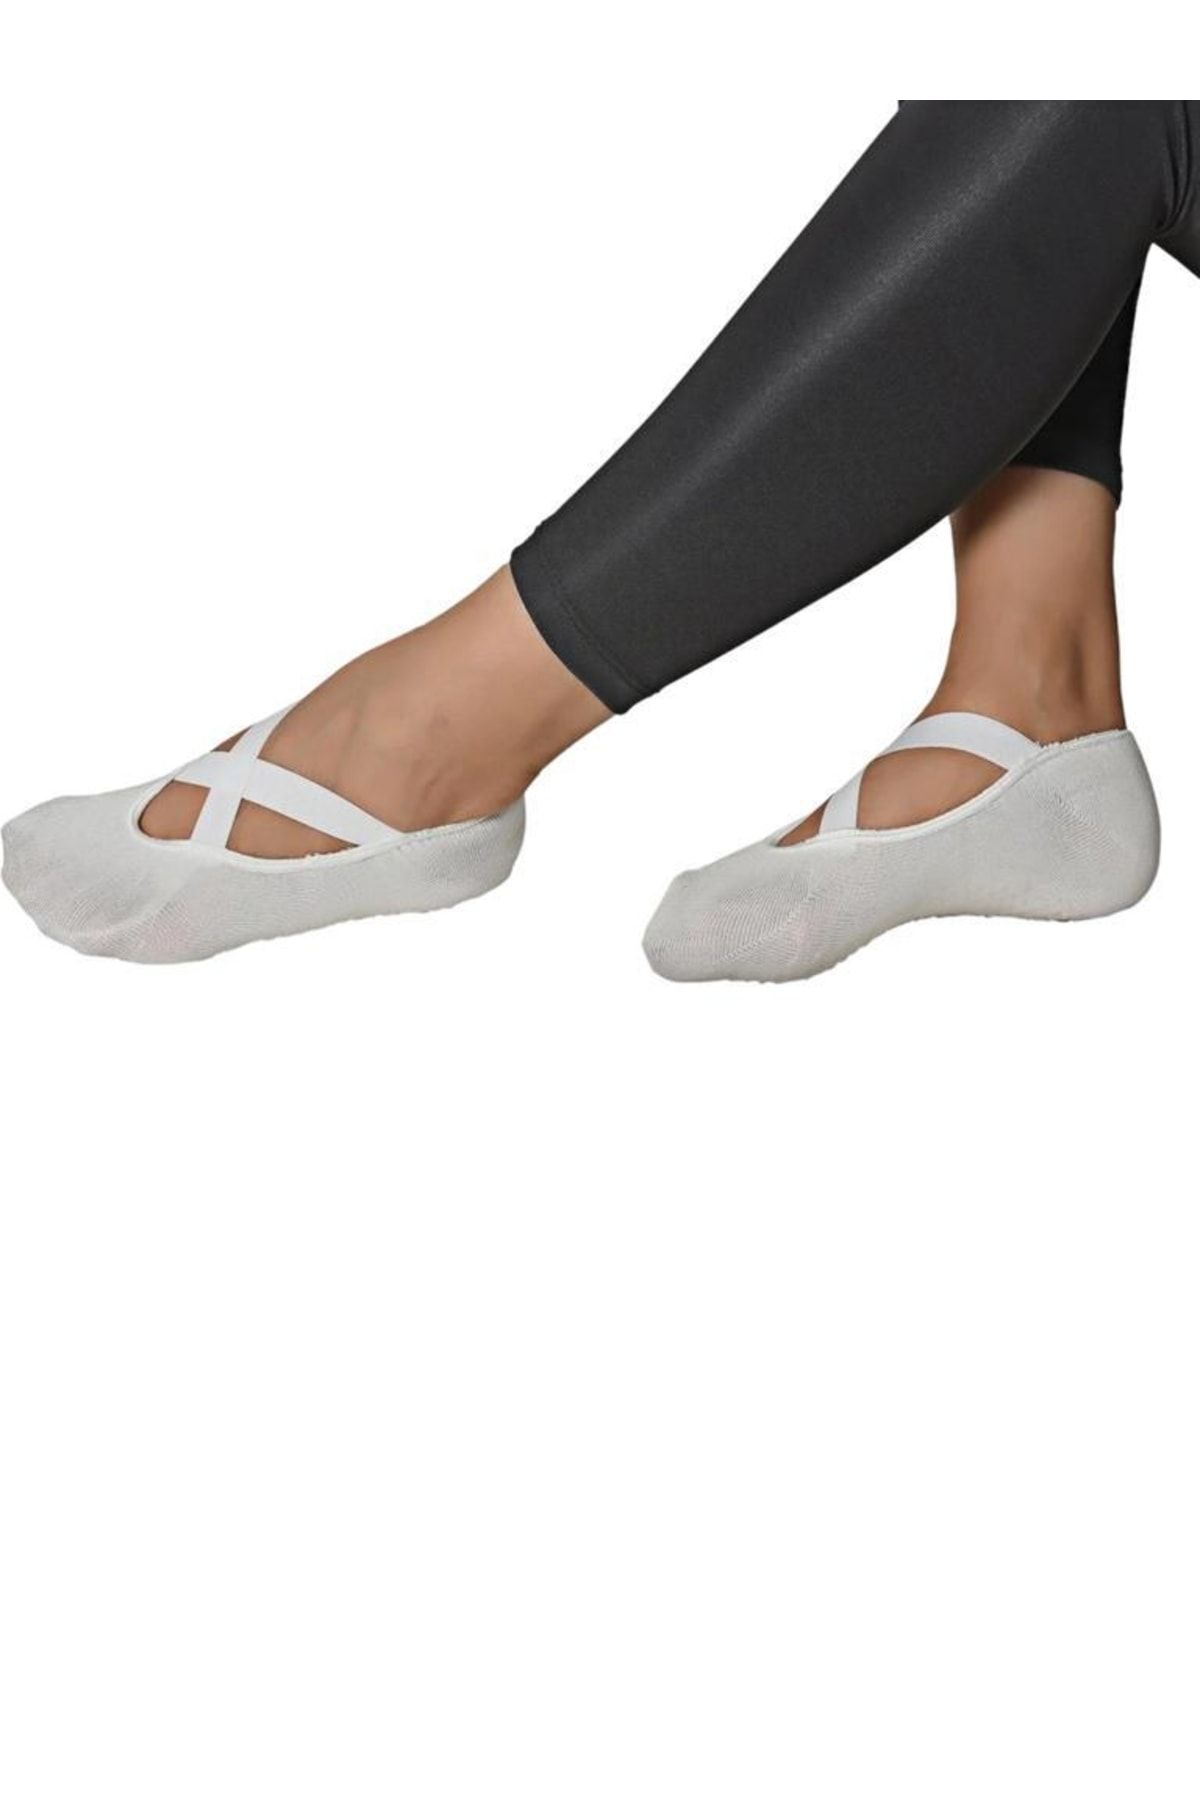 REMEGE Yoga Çorabı / Kaydırmaz Pilates Çorap Dans Yoga Çorabı